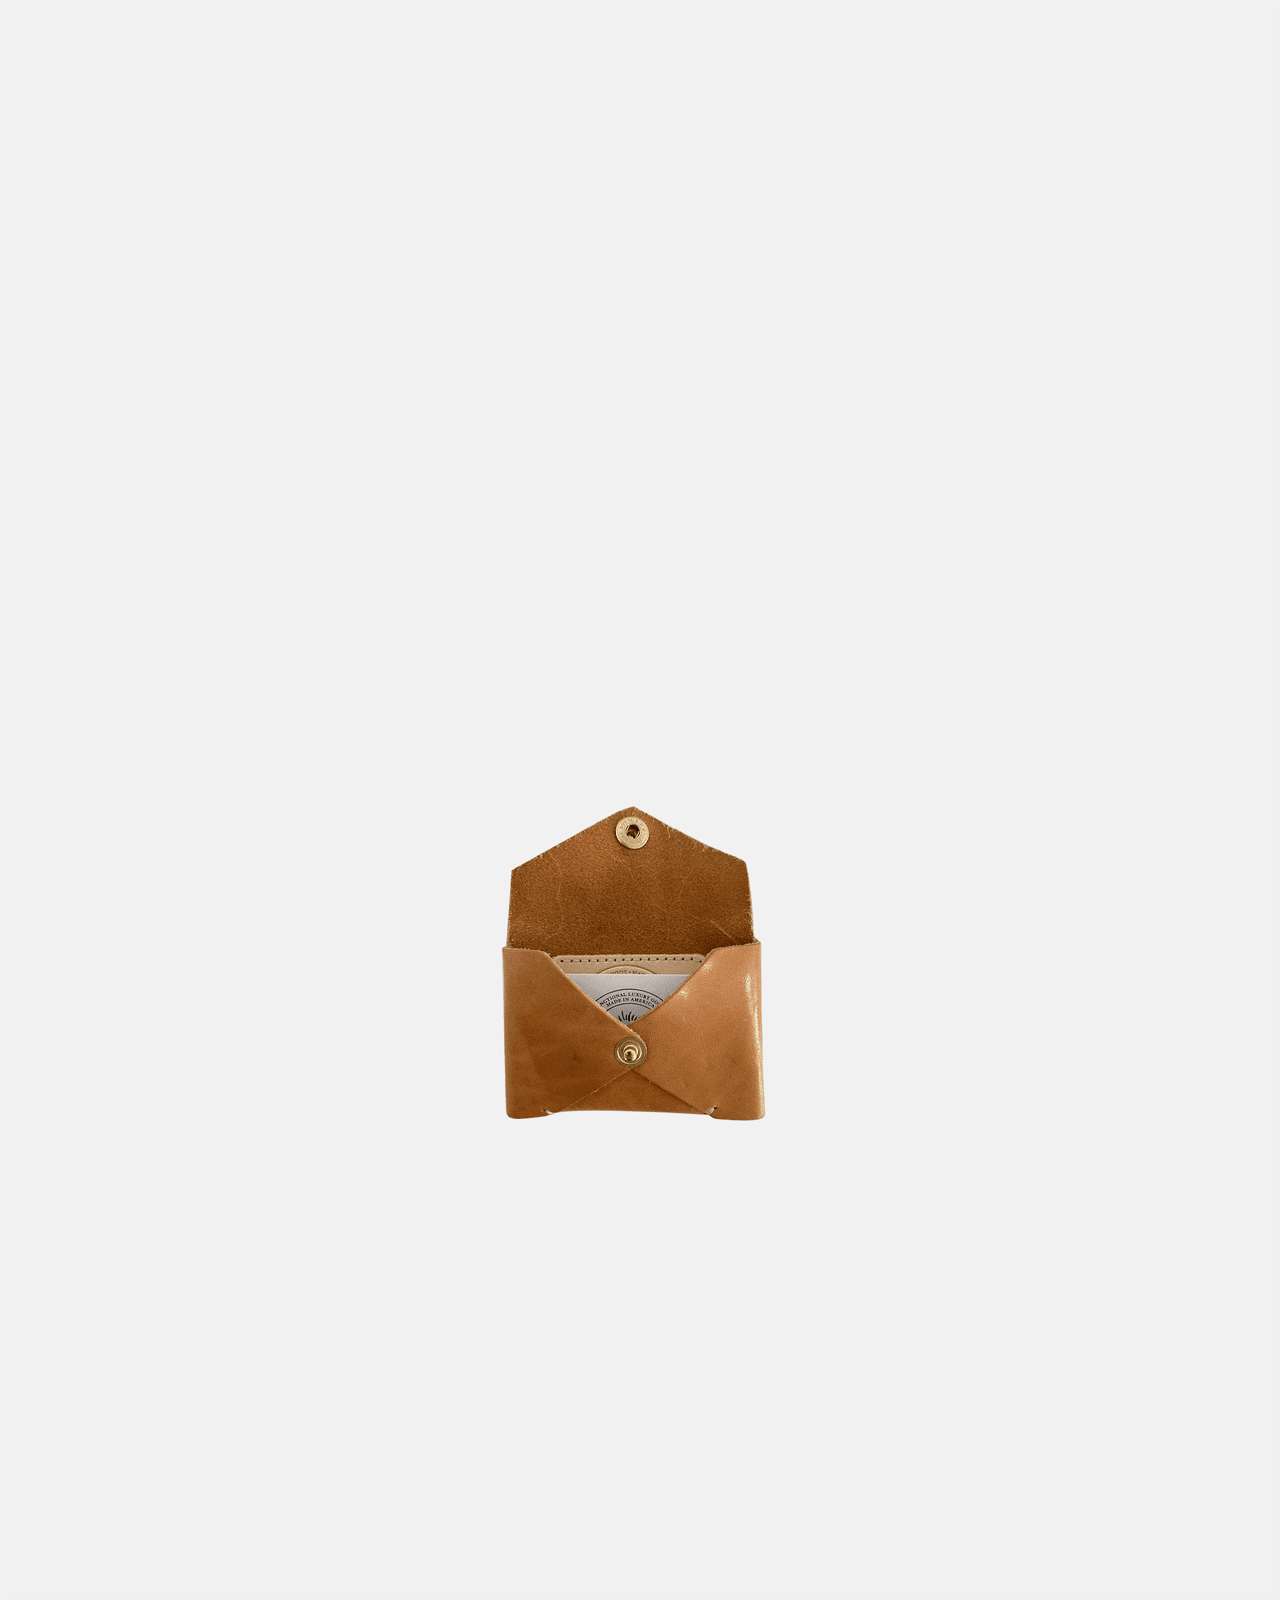 Petite Origami Envelope | Natural Blair Ritchey